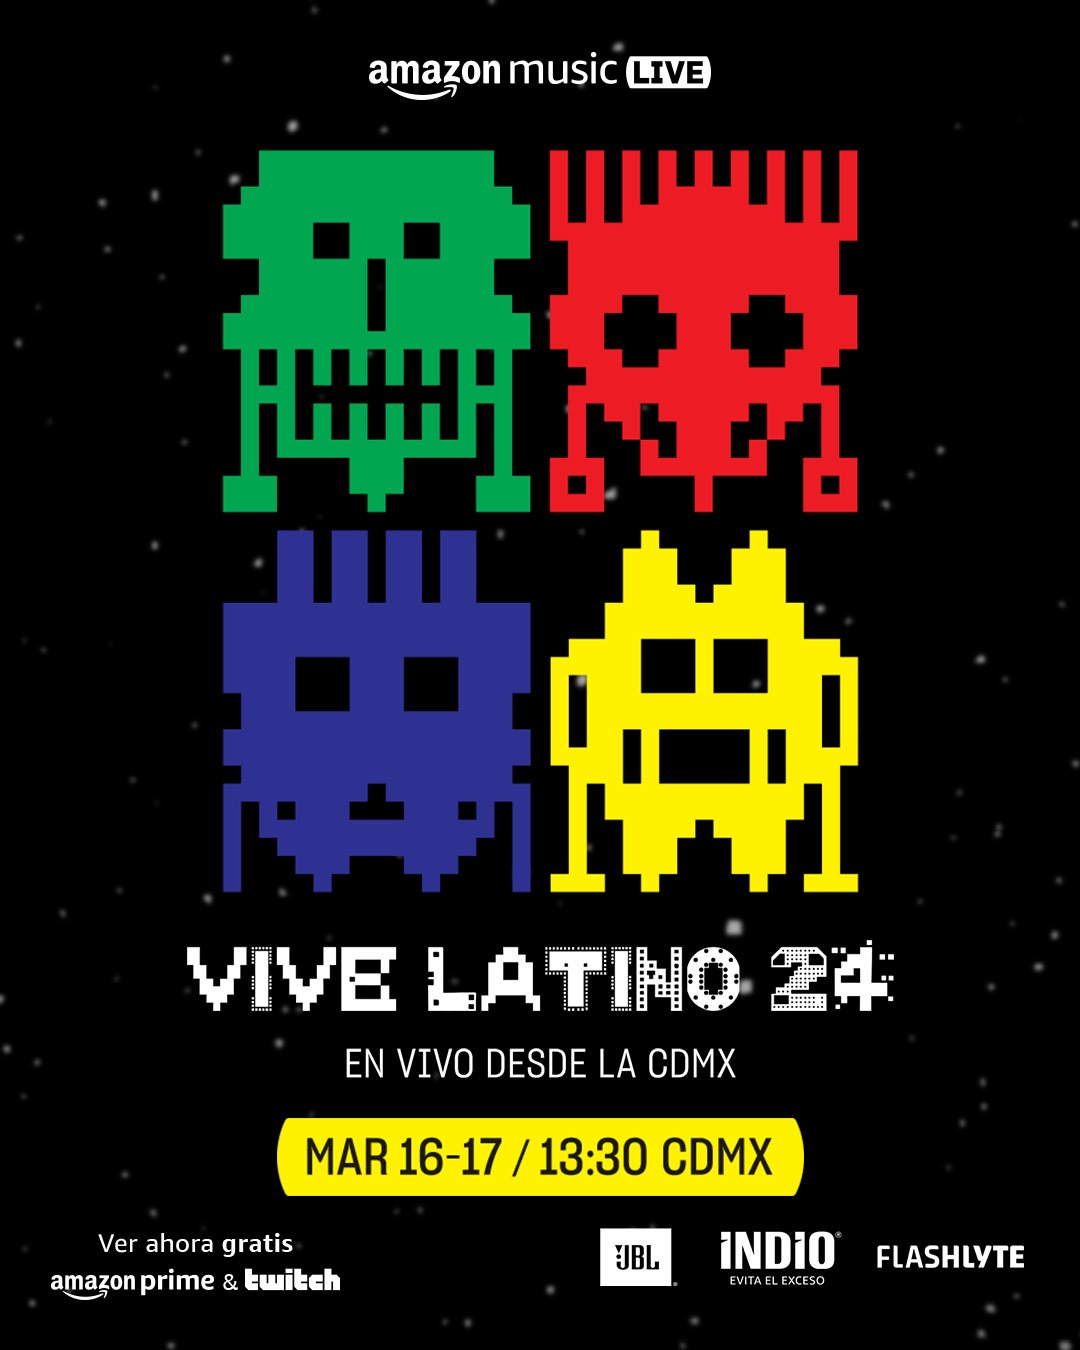 Amazon Music revoluciona el panorama musical con el streaming en vivo del festival Vive Latino